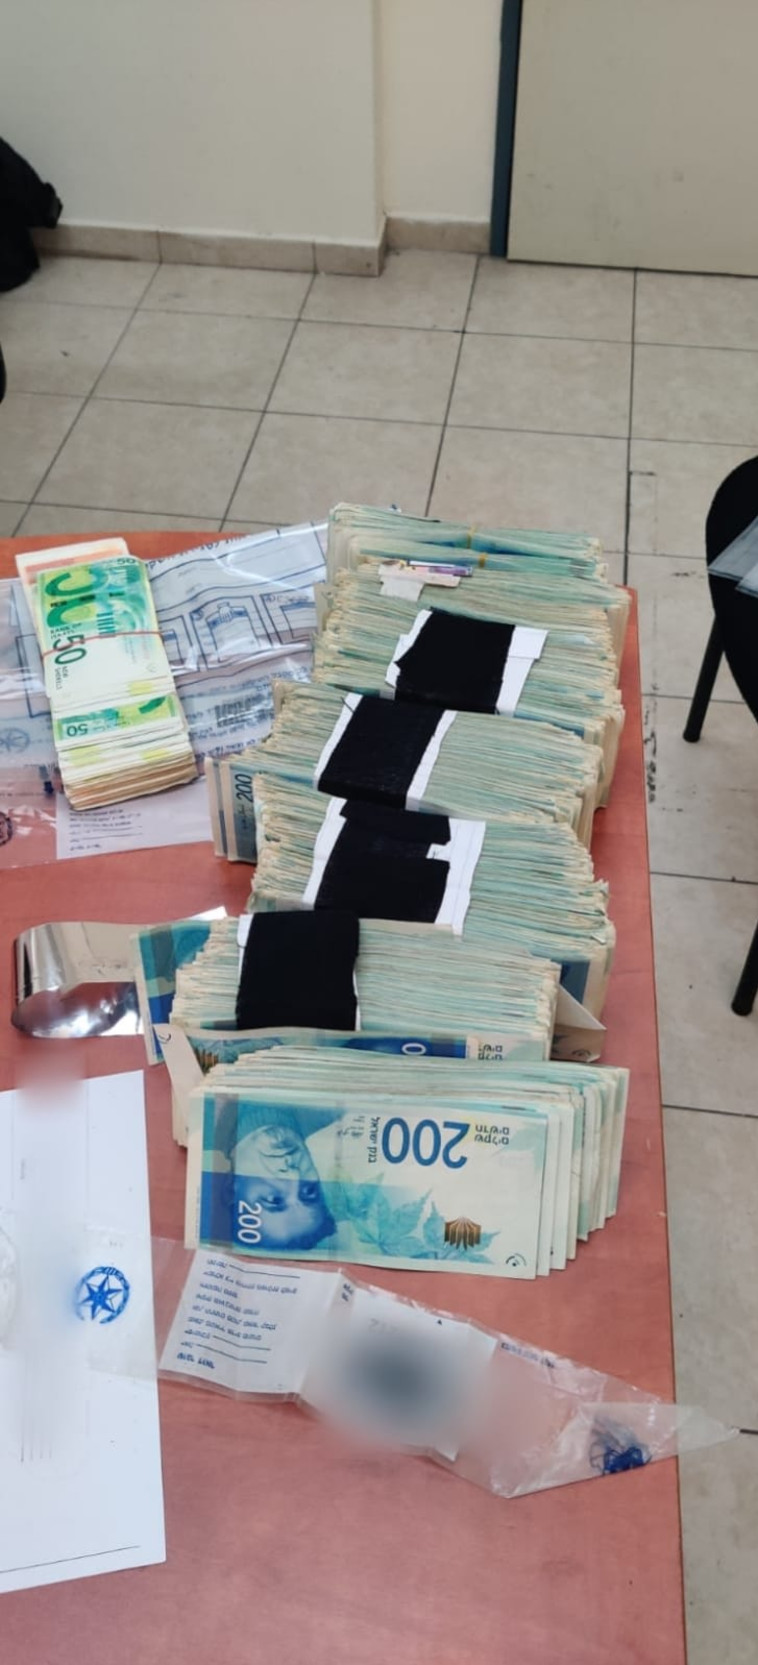 הכסף שנתפס אצל החשודים (צילום: דוברות המשטרה)